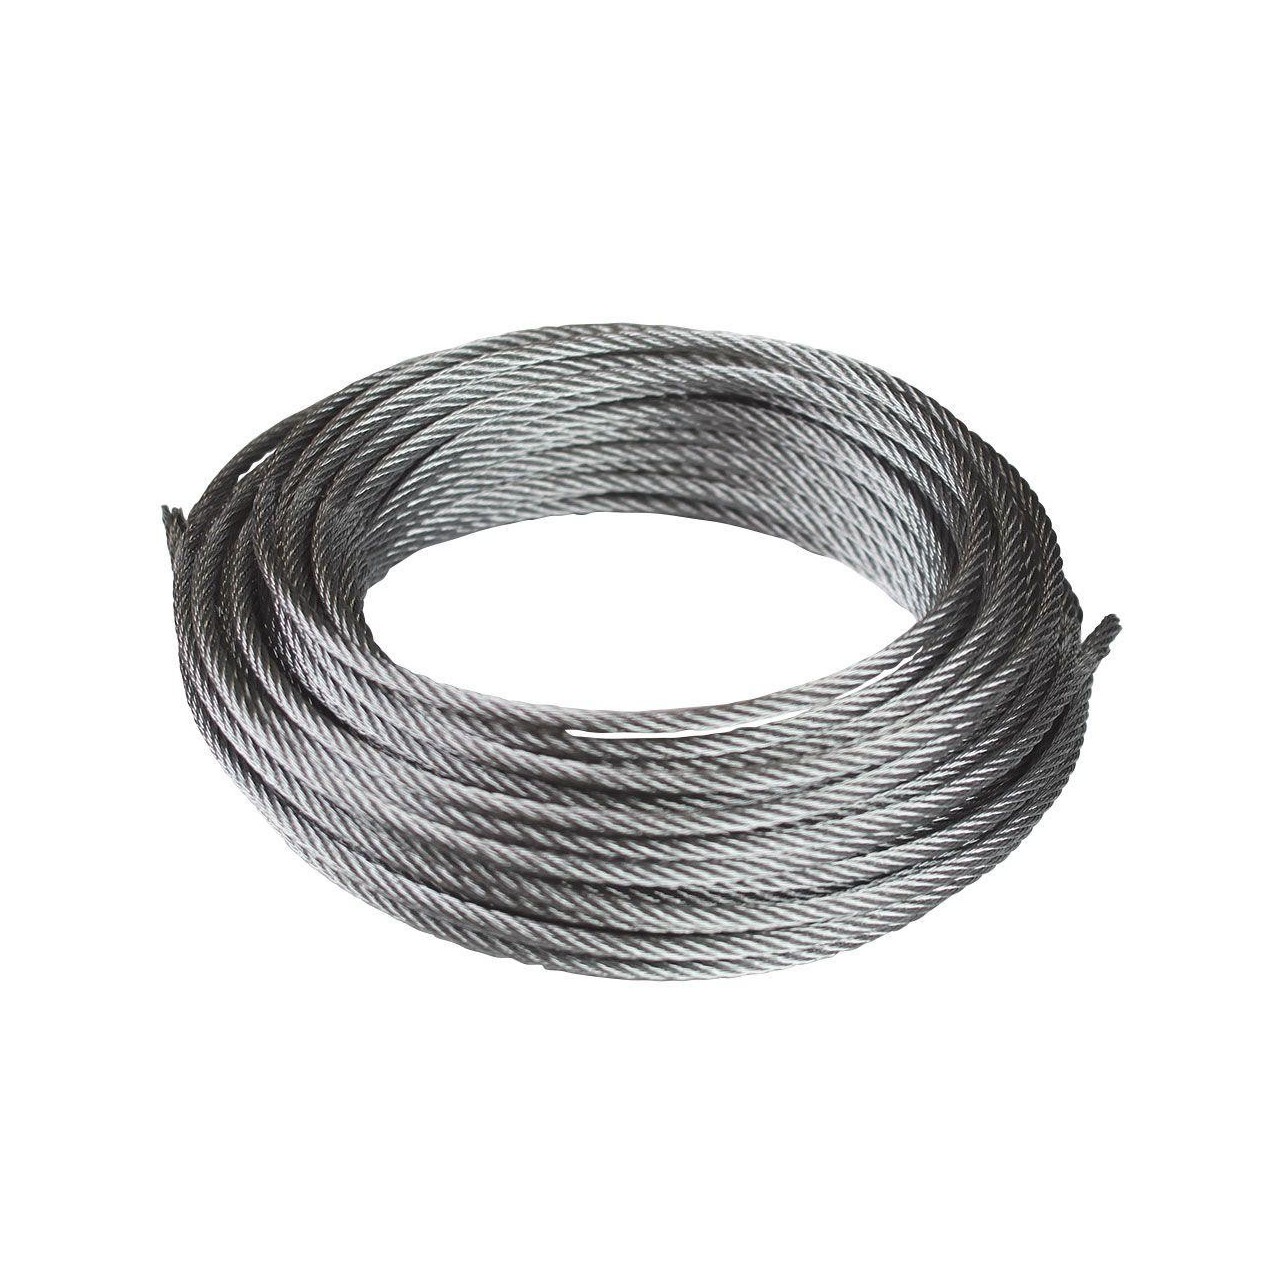 Cable de acero DIN-3055 6x7+1 galvanizado